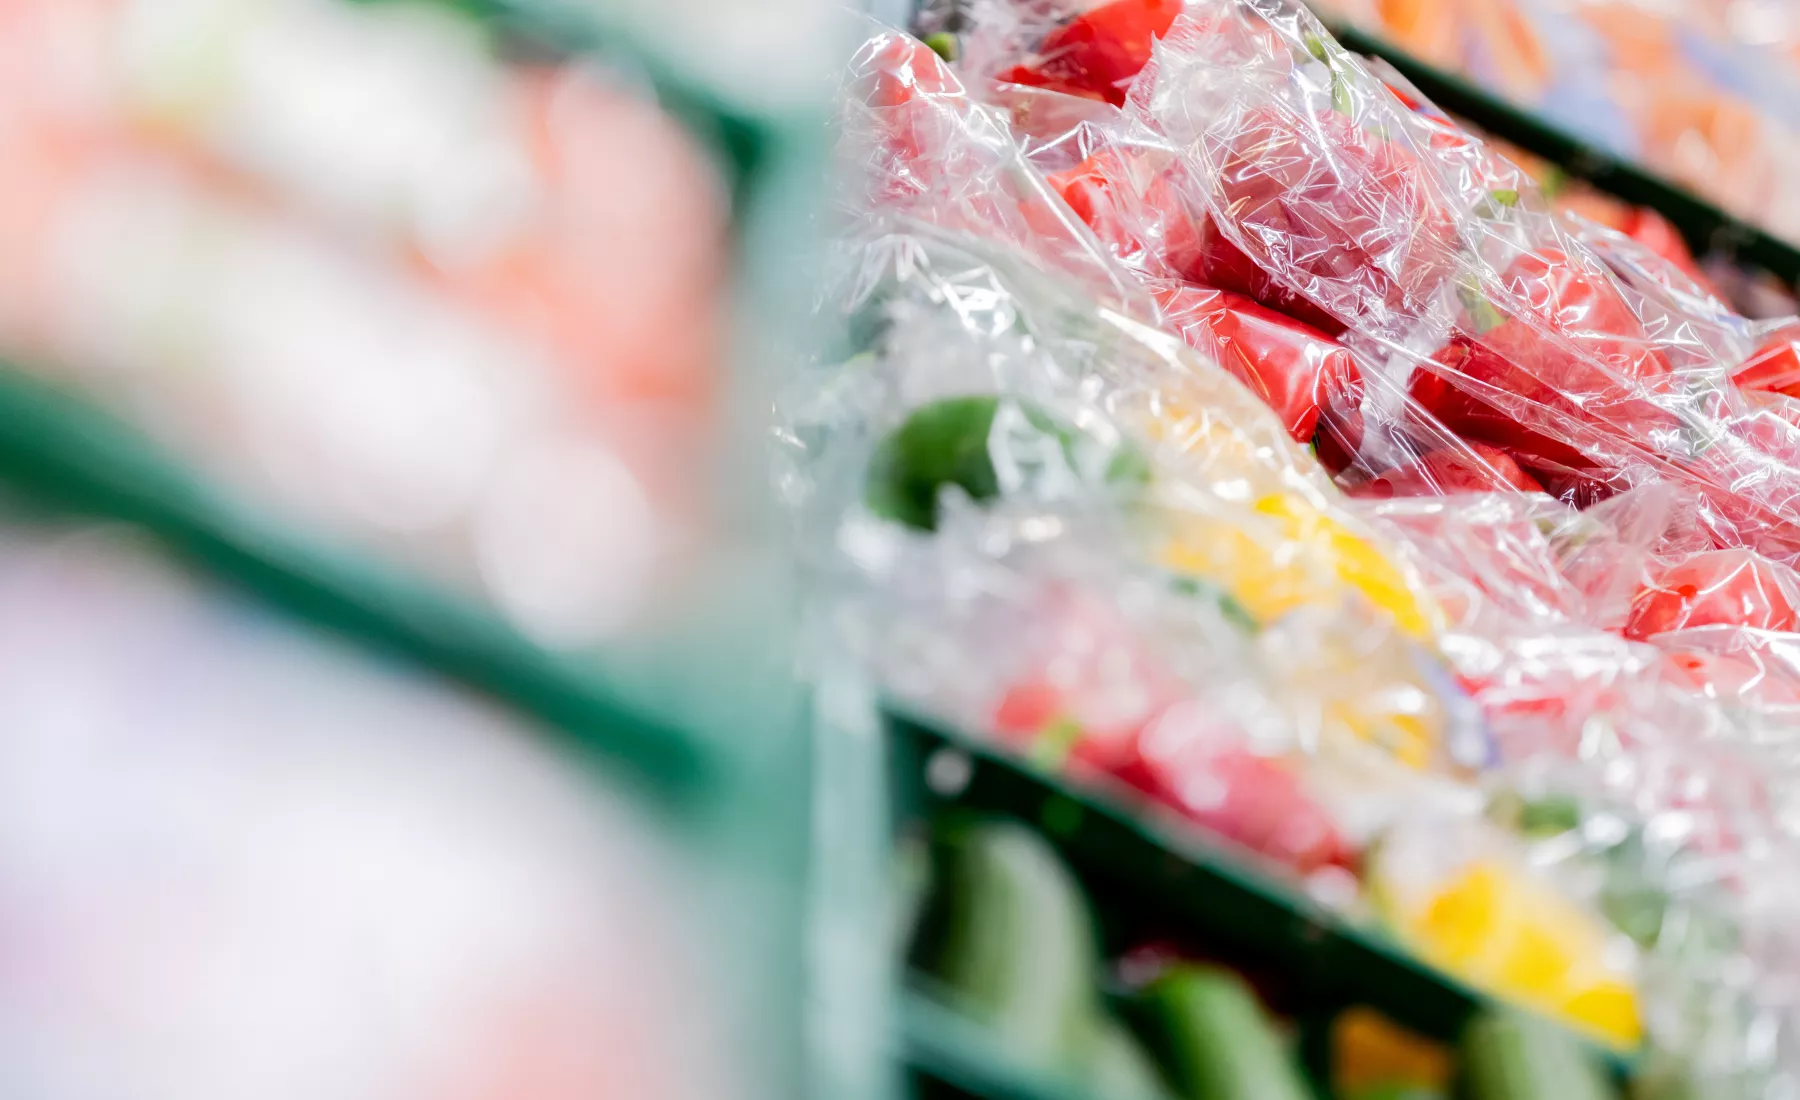 Gemüse in Plastikverpackung liegen in einem Supermarkt